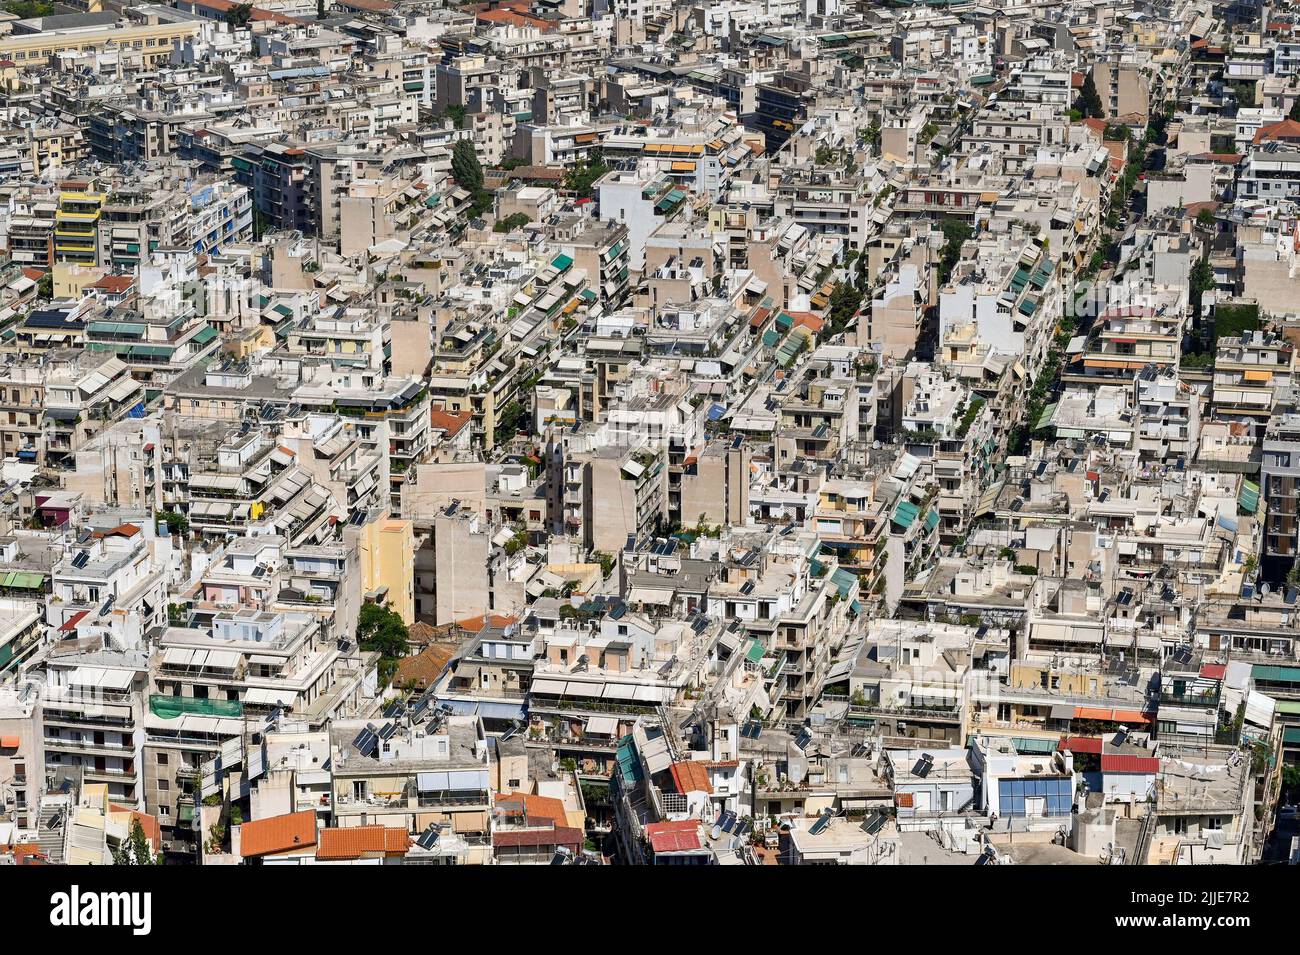 Atene, Grecia - Maggio 2022: Vista aerea di case ed edifici riuniti nel centro della città Foto Stock